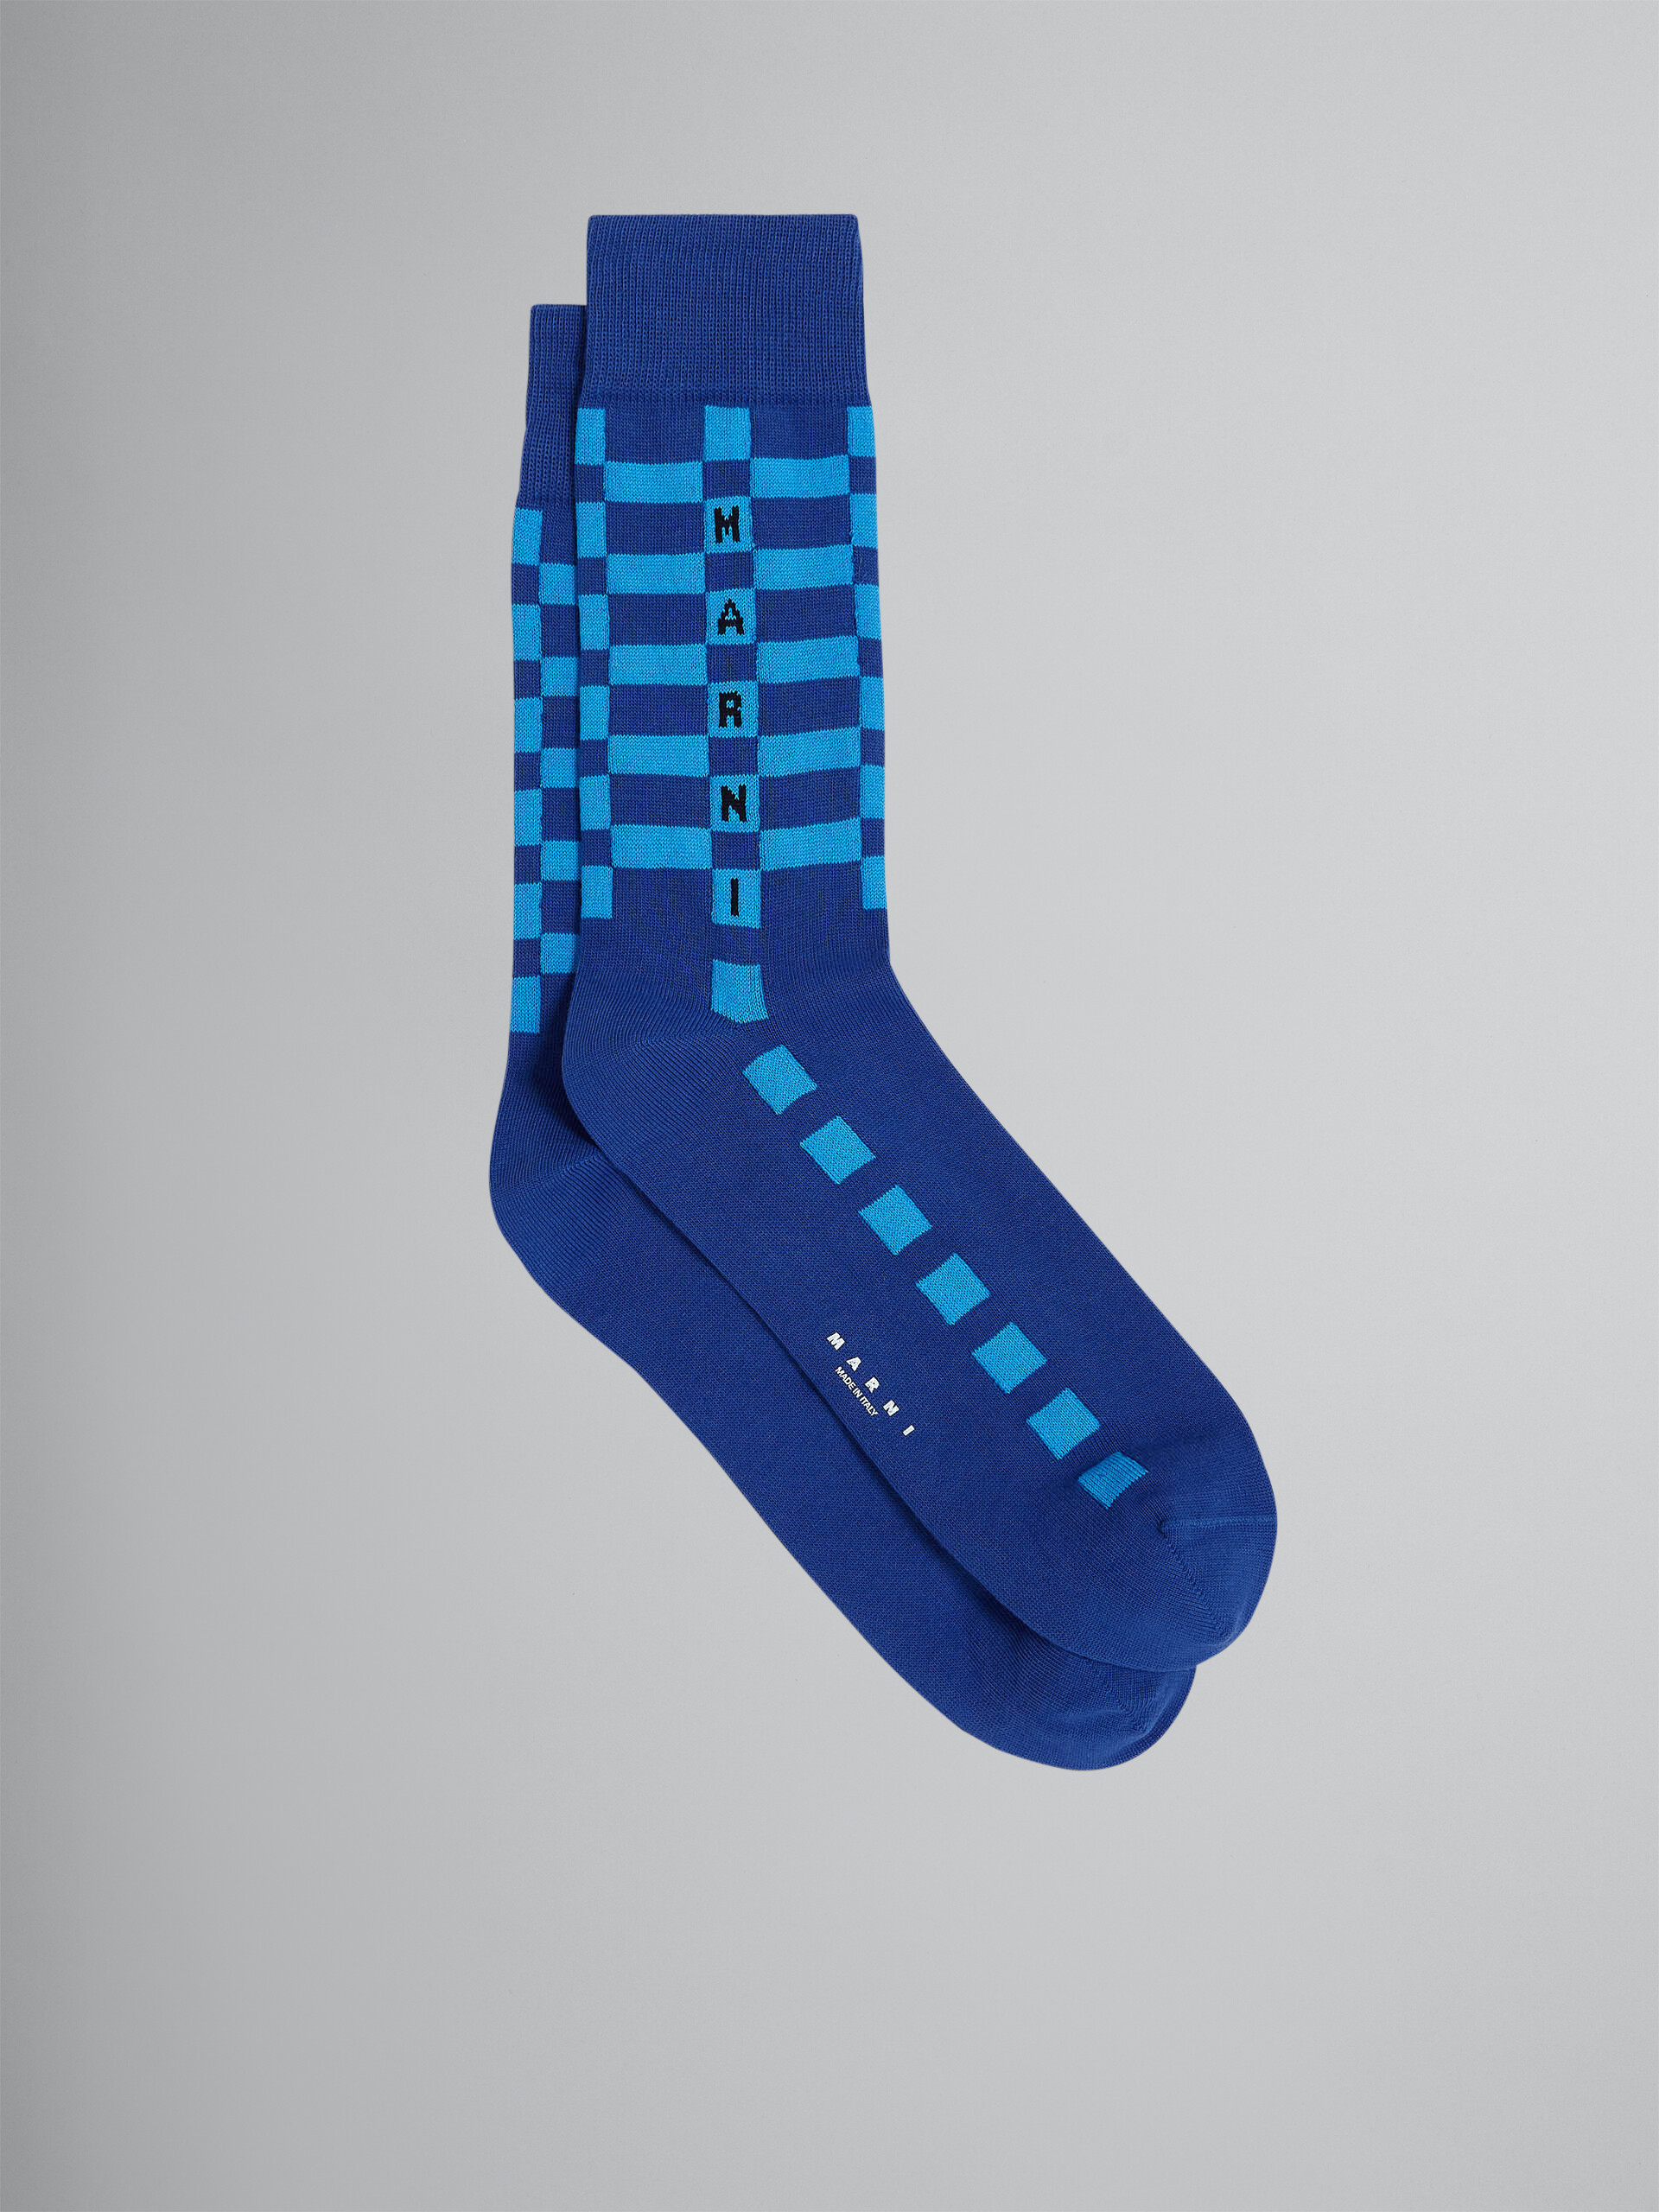 Blaue Socken aus Baumwolle und Nylon - Socken - Image 1